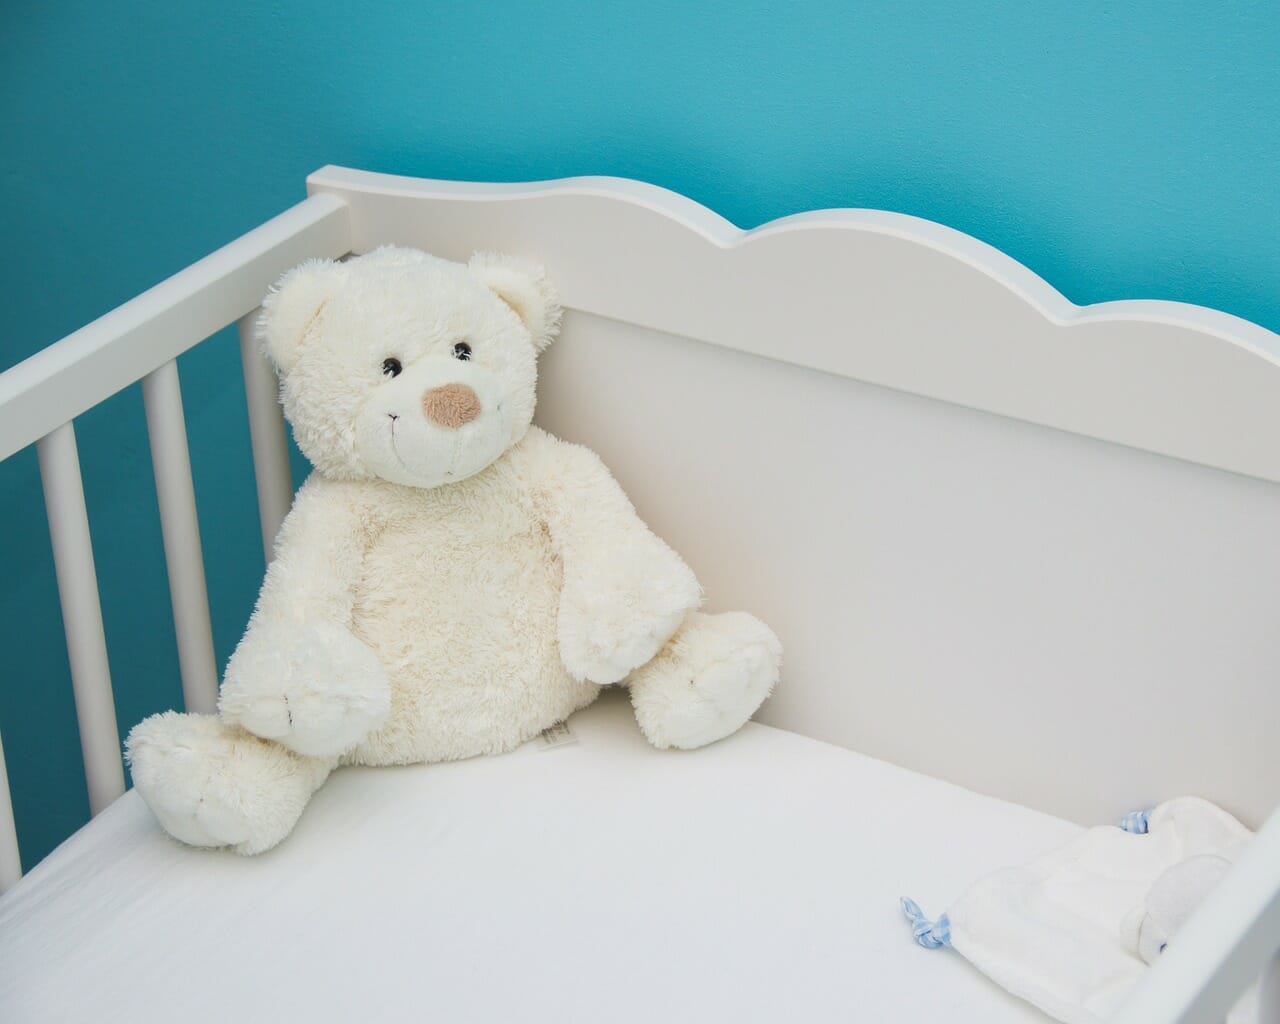 best mattress for infant cribs